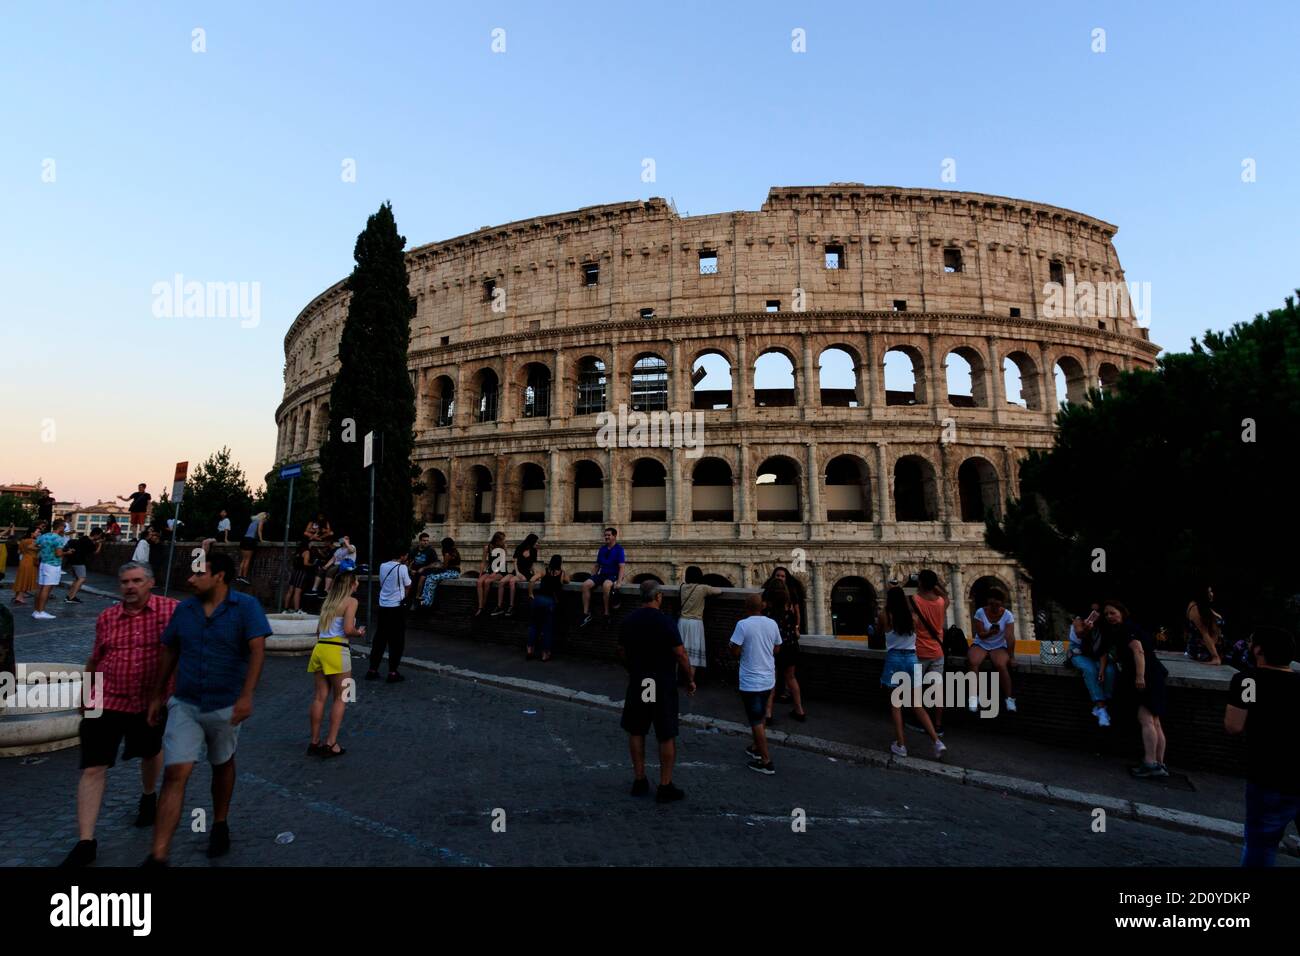 Les gens se rassemblent dans la via Nicola Salvi pour attendre les illuminations à l'intérieur du Colisée de Rome pour être allumé pendant la soirée heure bleue. Banque D'Images